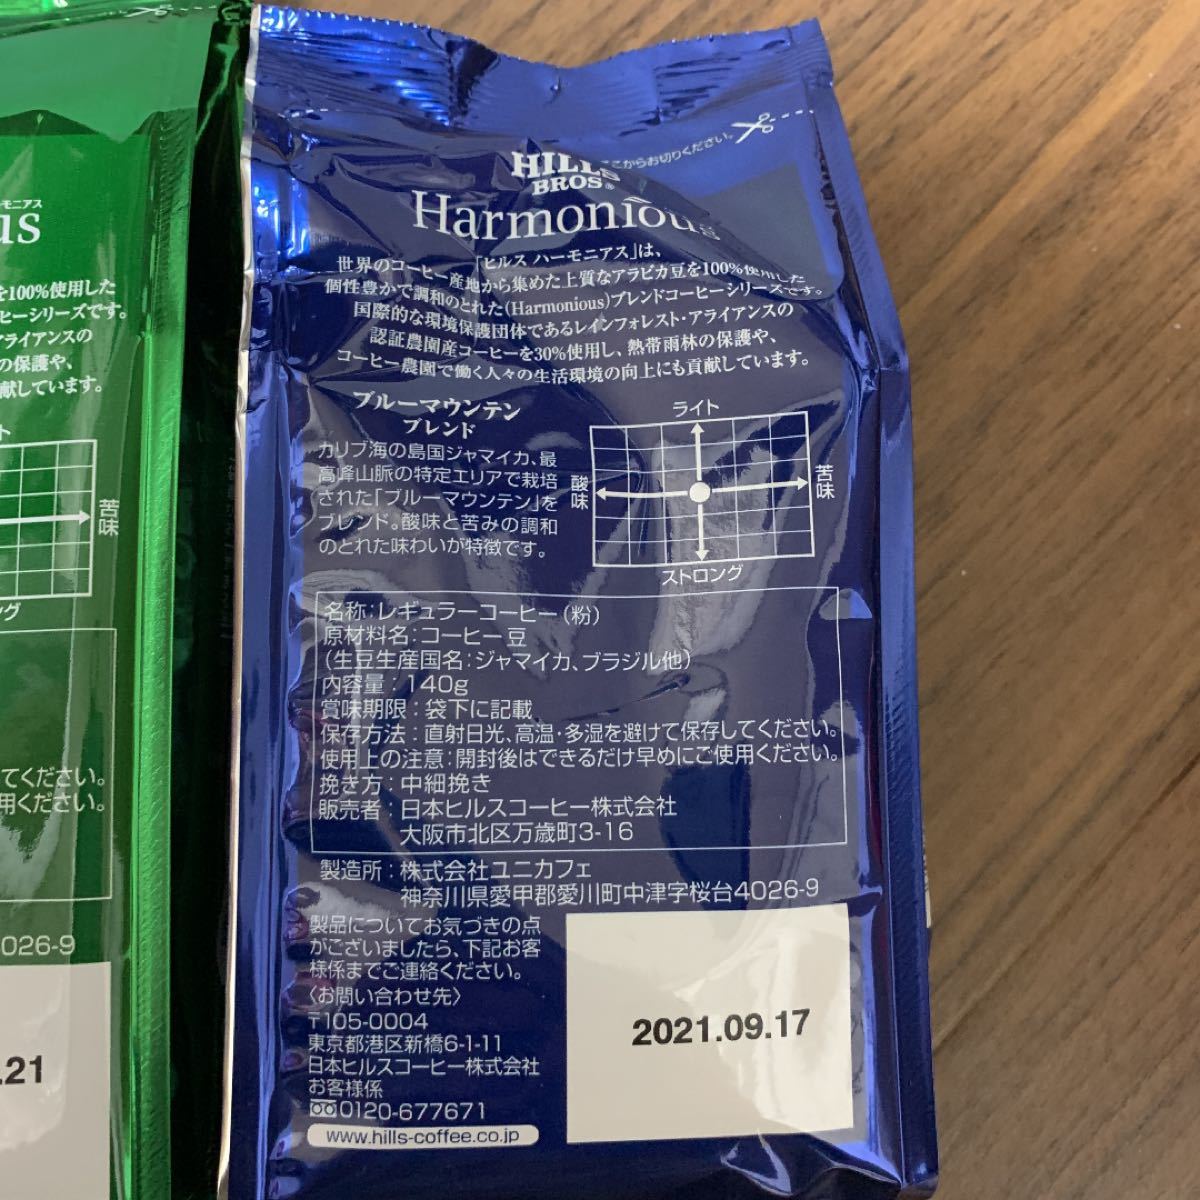 【UCC公式コーヒー】ヒルス ハーモニアス 3種飲み比べセット